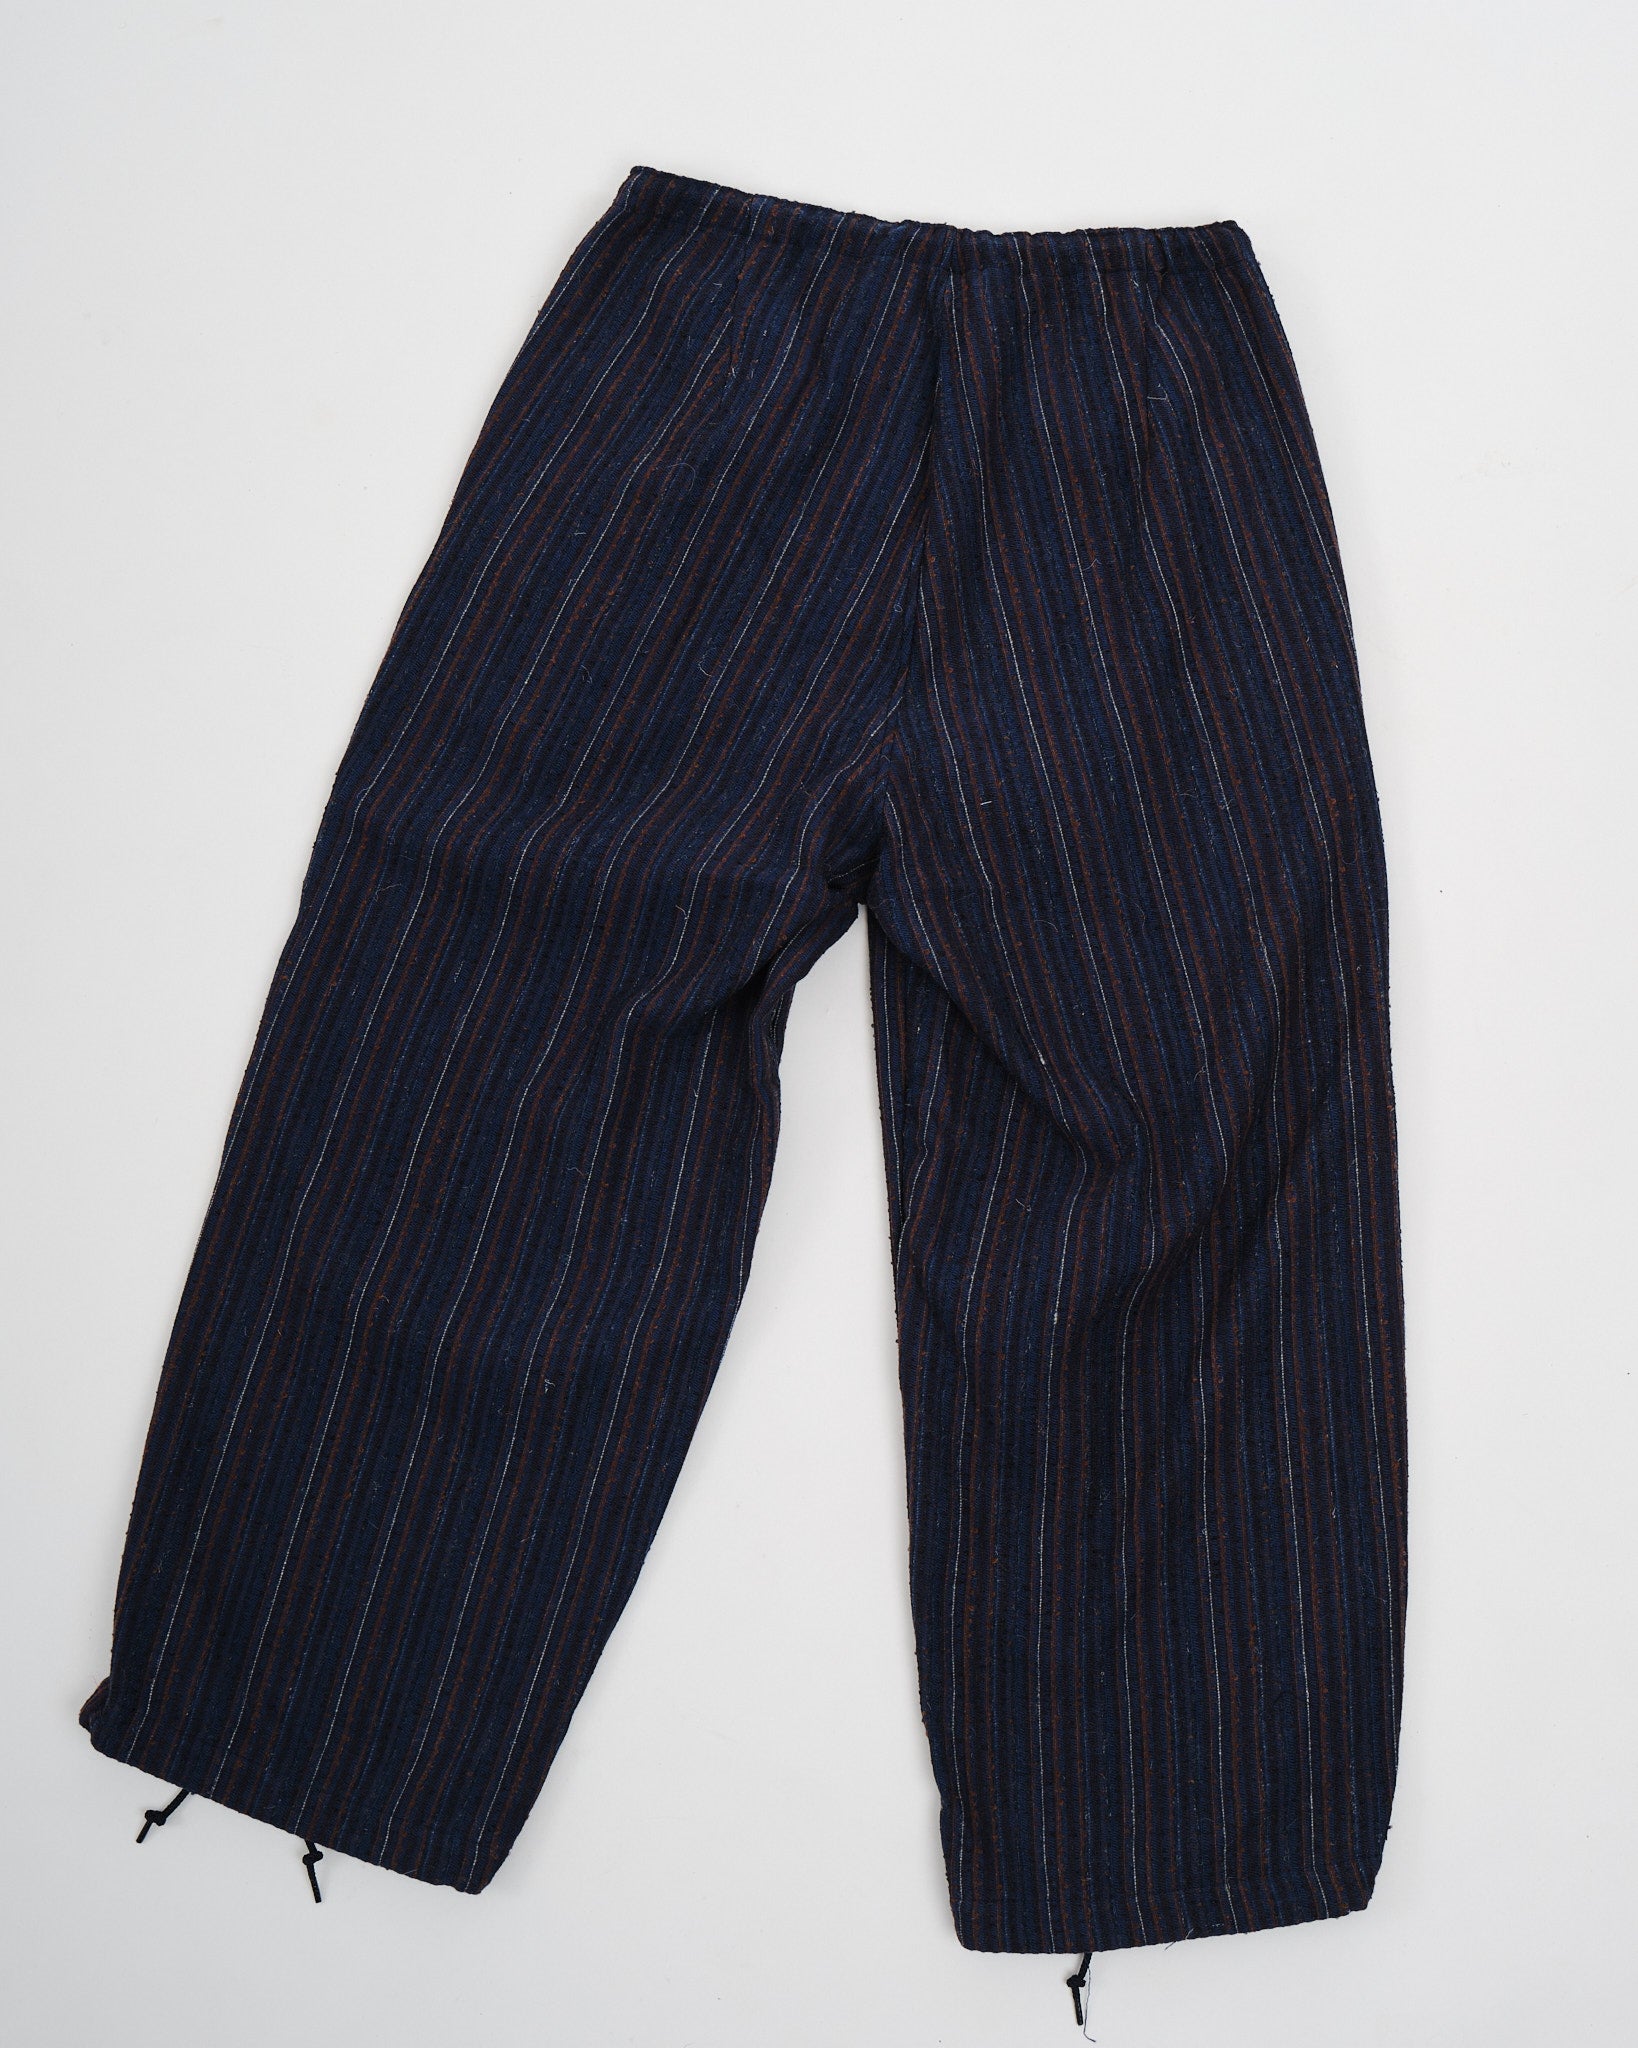 MIL Easy Pants Hickory Tweed Navy - Meadow